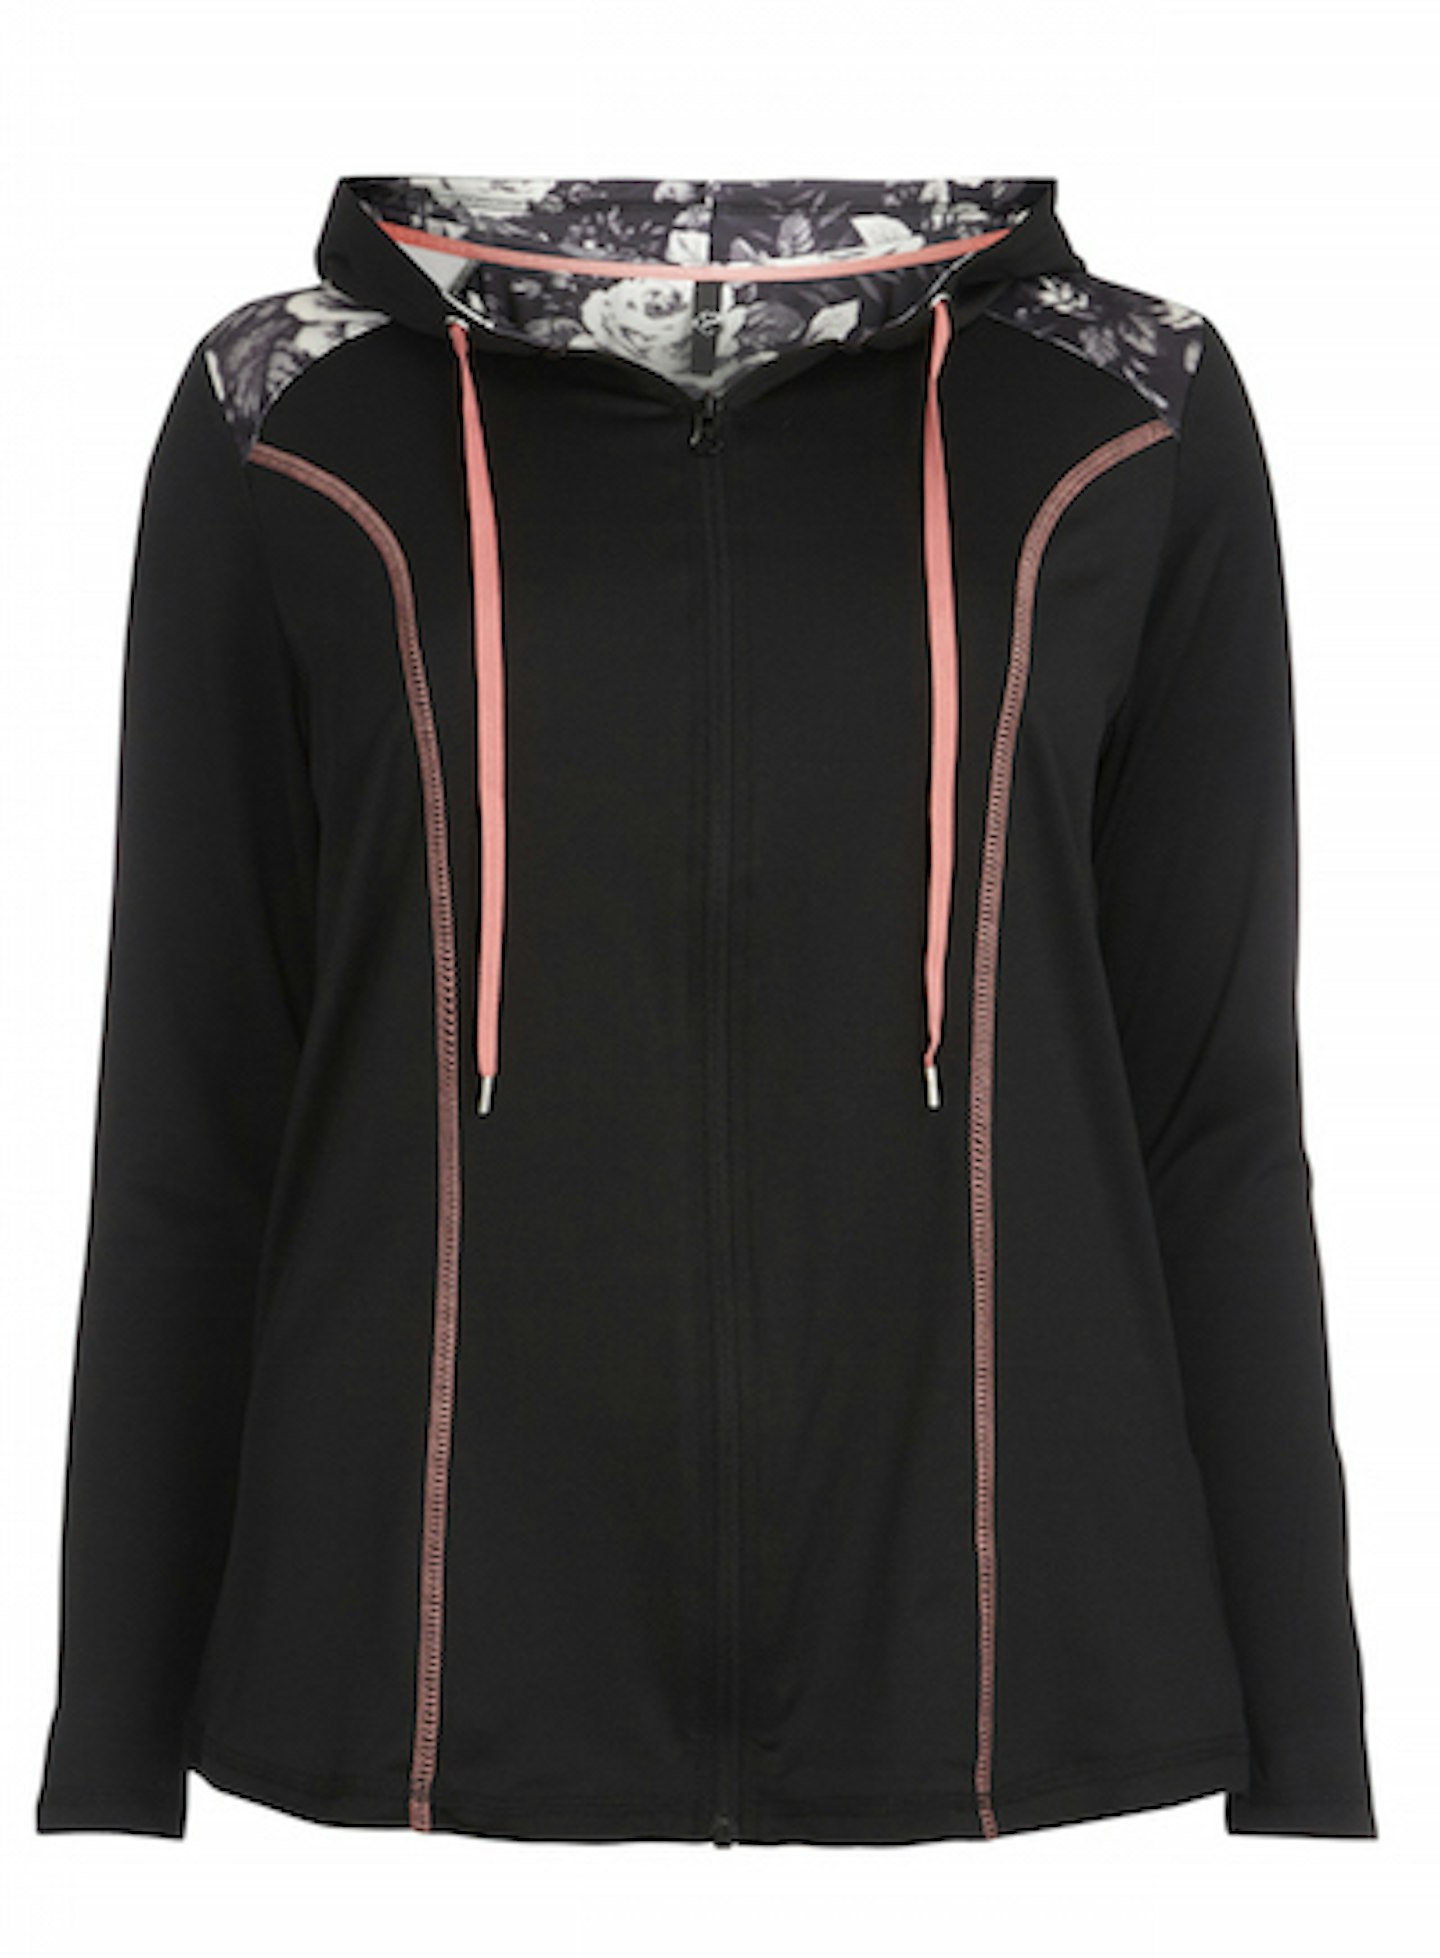 Black activewear jacket £28